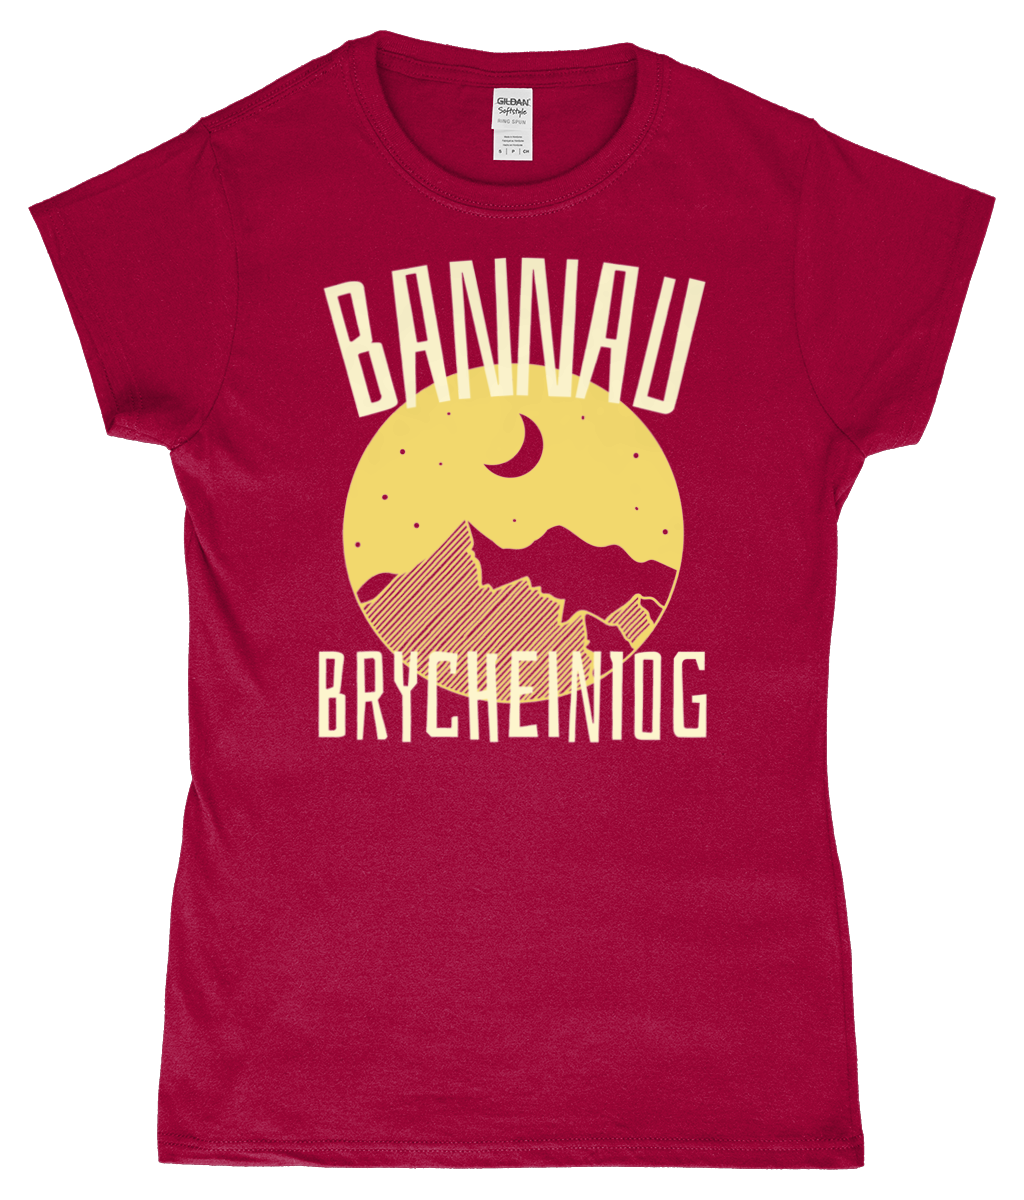 Bannau Brycheiniog - Crys-T 